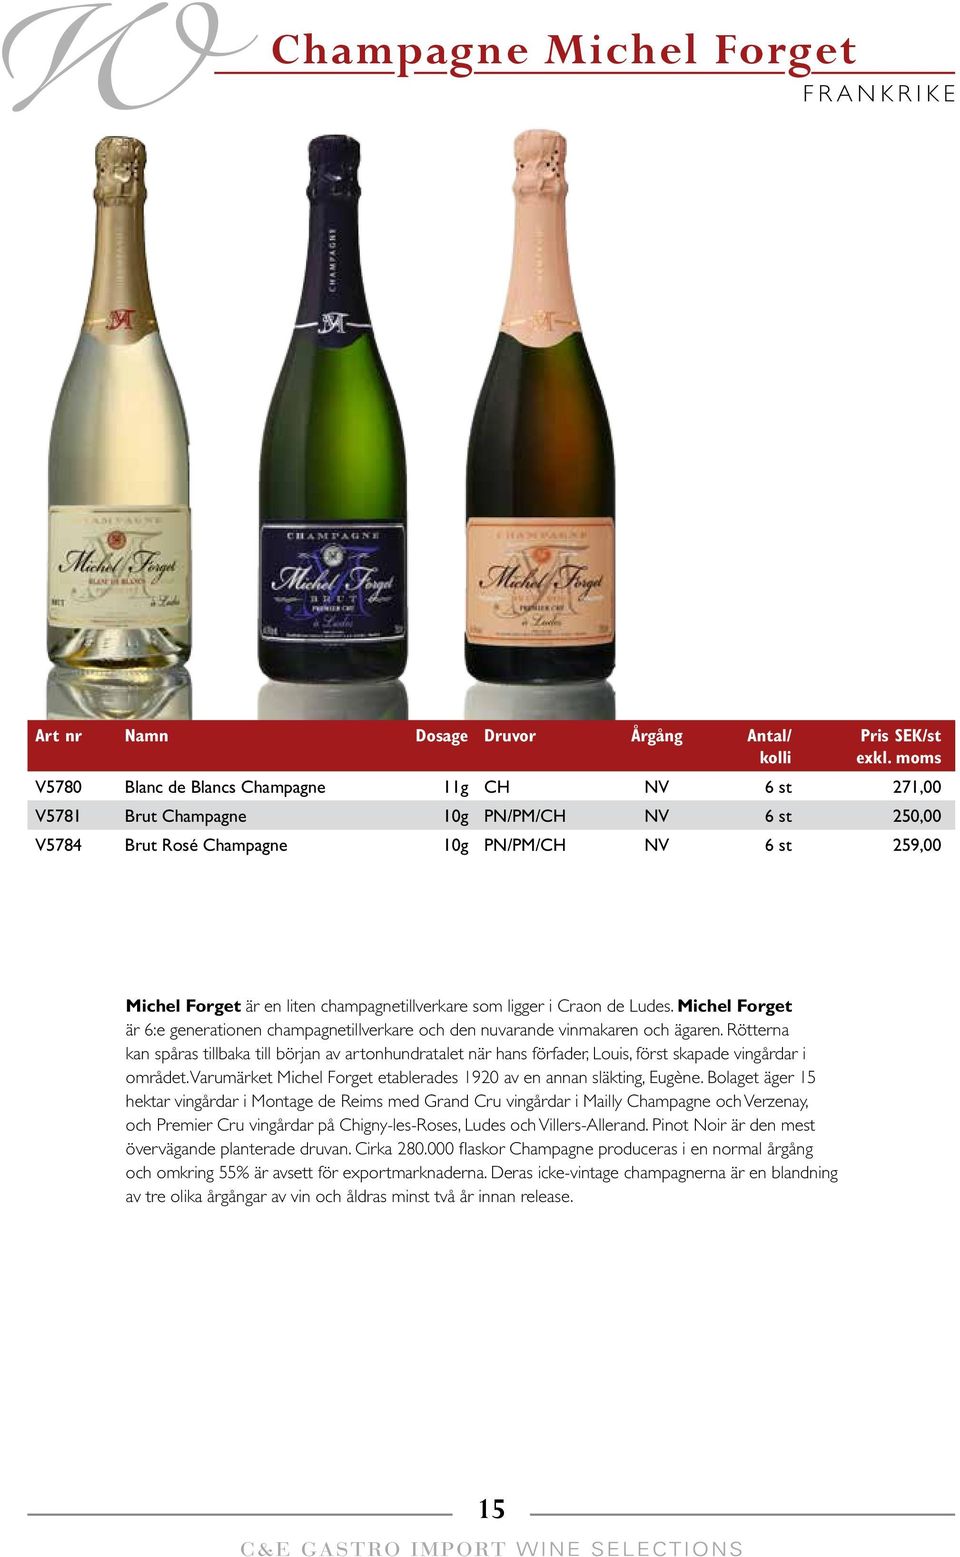 Michel Forget är 6:e generationen champagnetillverkare och den nuvarande vinmakaren och ägaren.